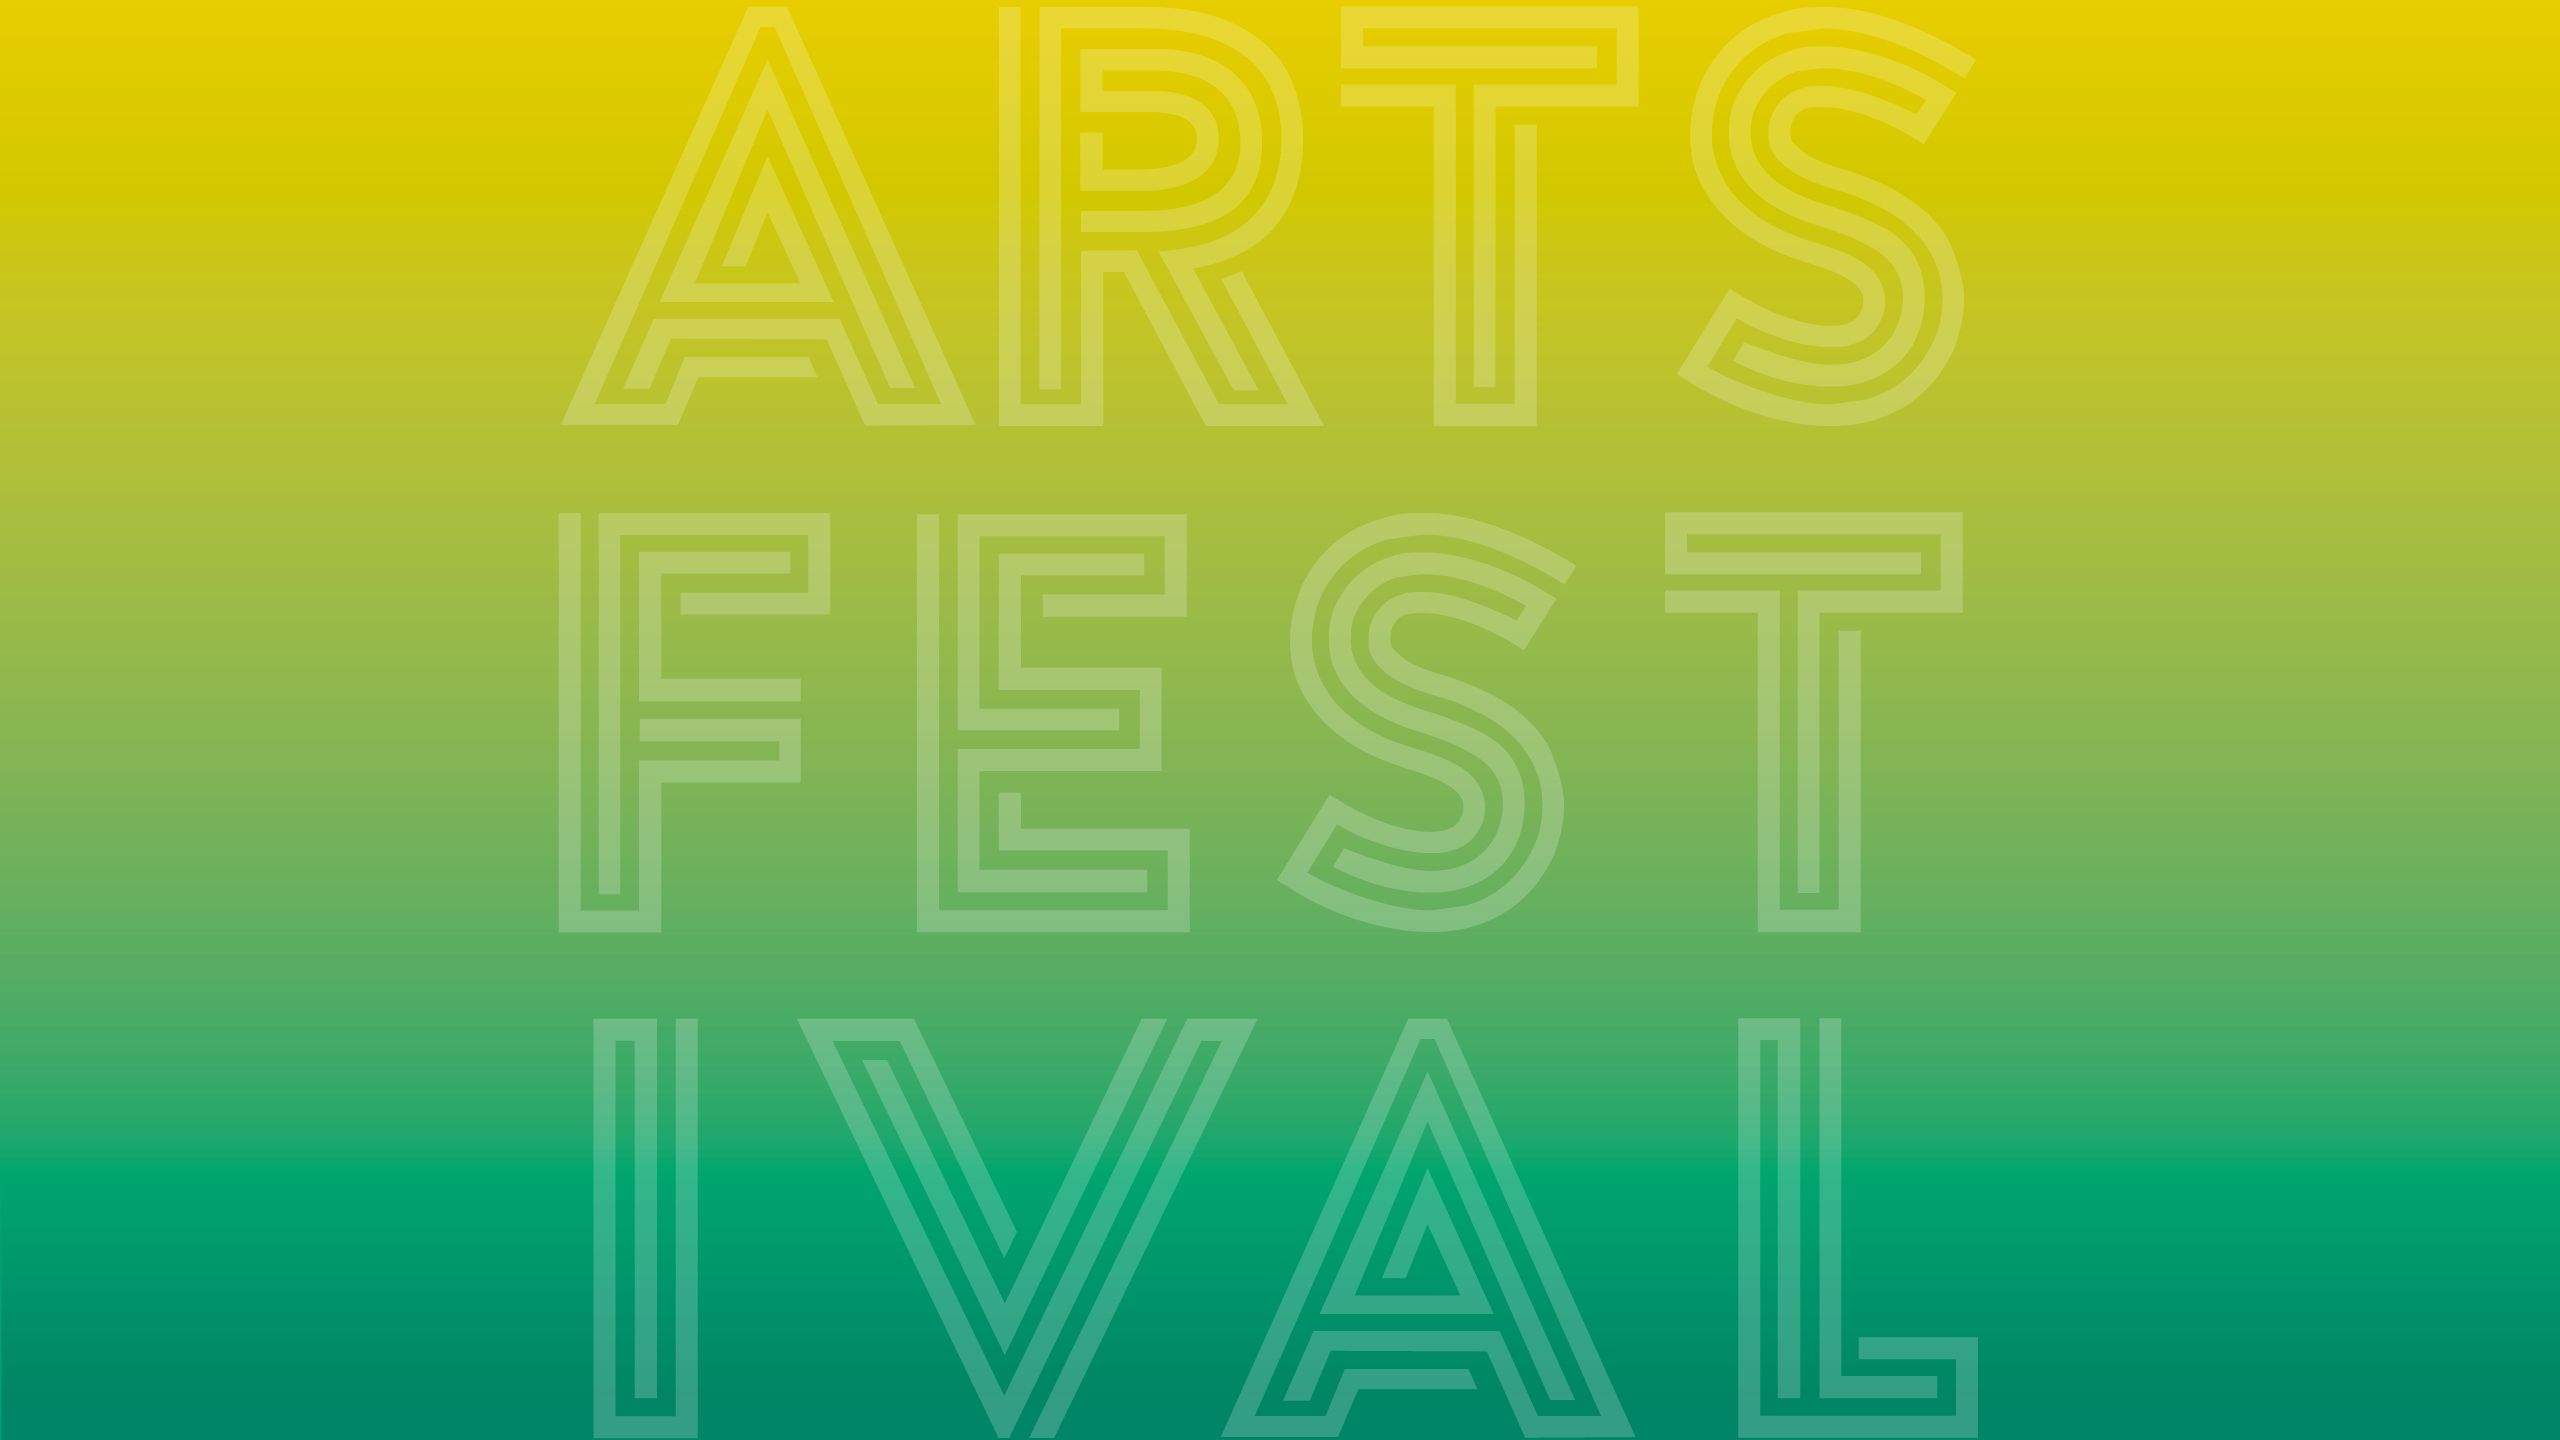 Arts festival graphic